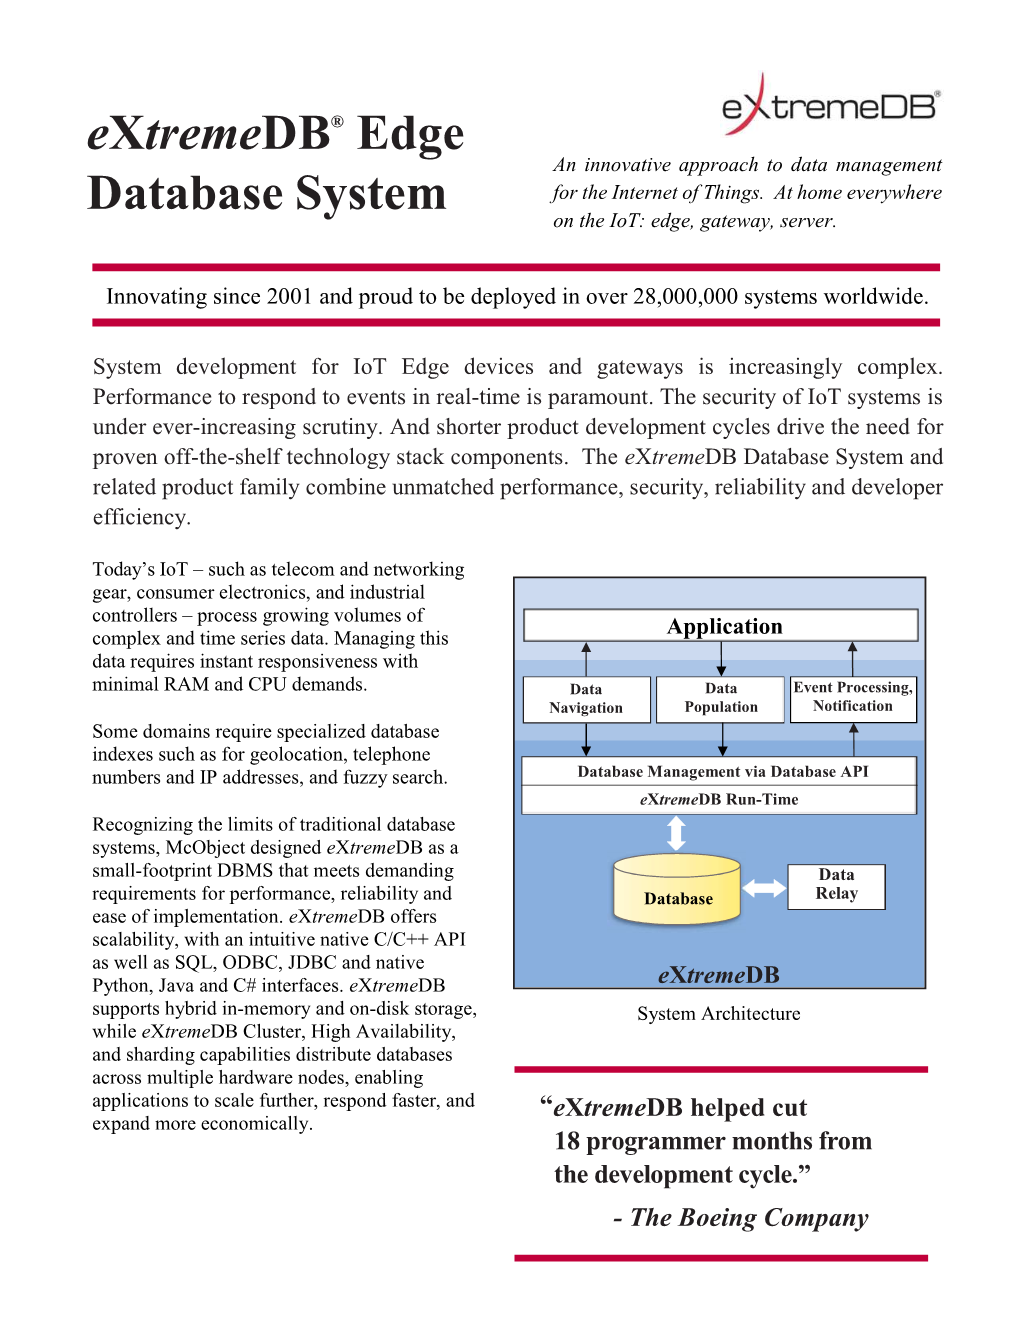 Extremedb Embedded Database Product Family 4